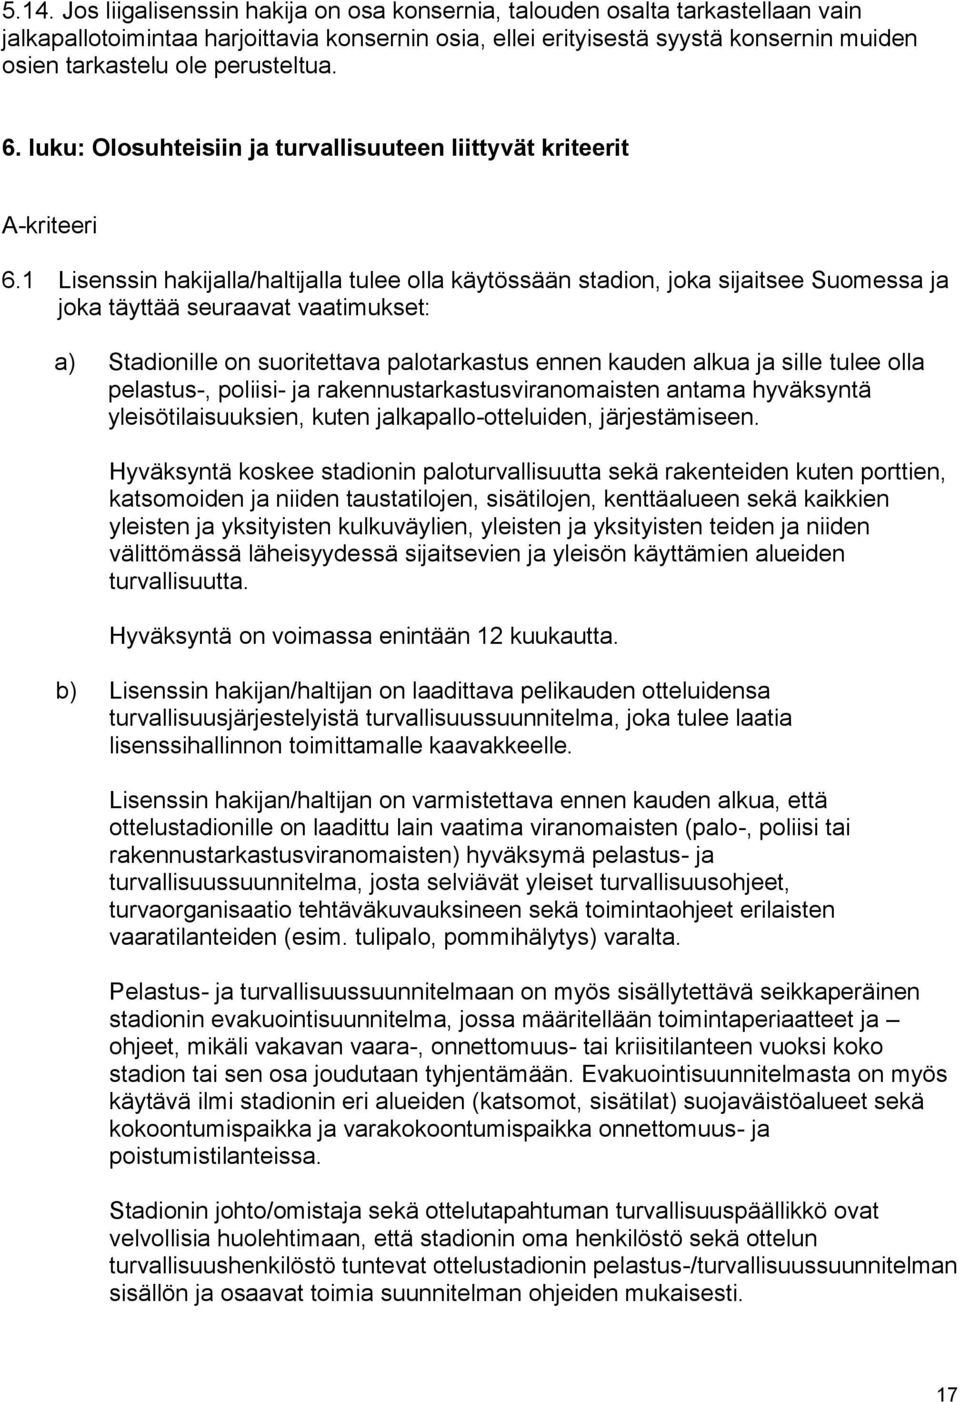 1 Lisenssin hakijalla/haltijalla tulee olla käytössään stadion, joka sijaitsee Suomessa ja joka täyttää seuraavat vaatimukset: a) Stadionille on suoritettava palotarkastus ennen kauden alkua ja sille